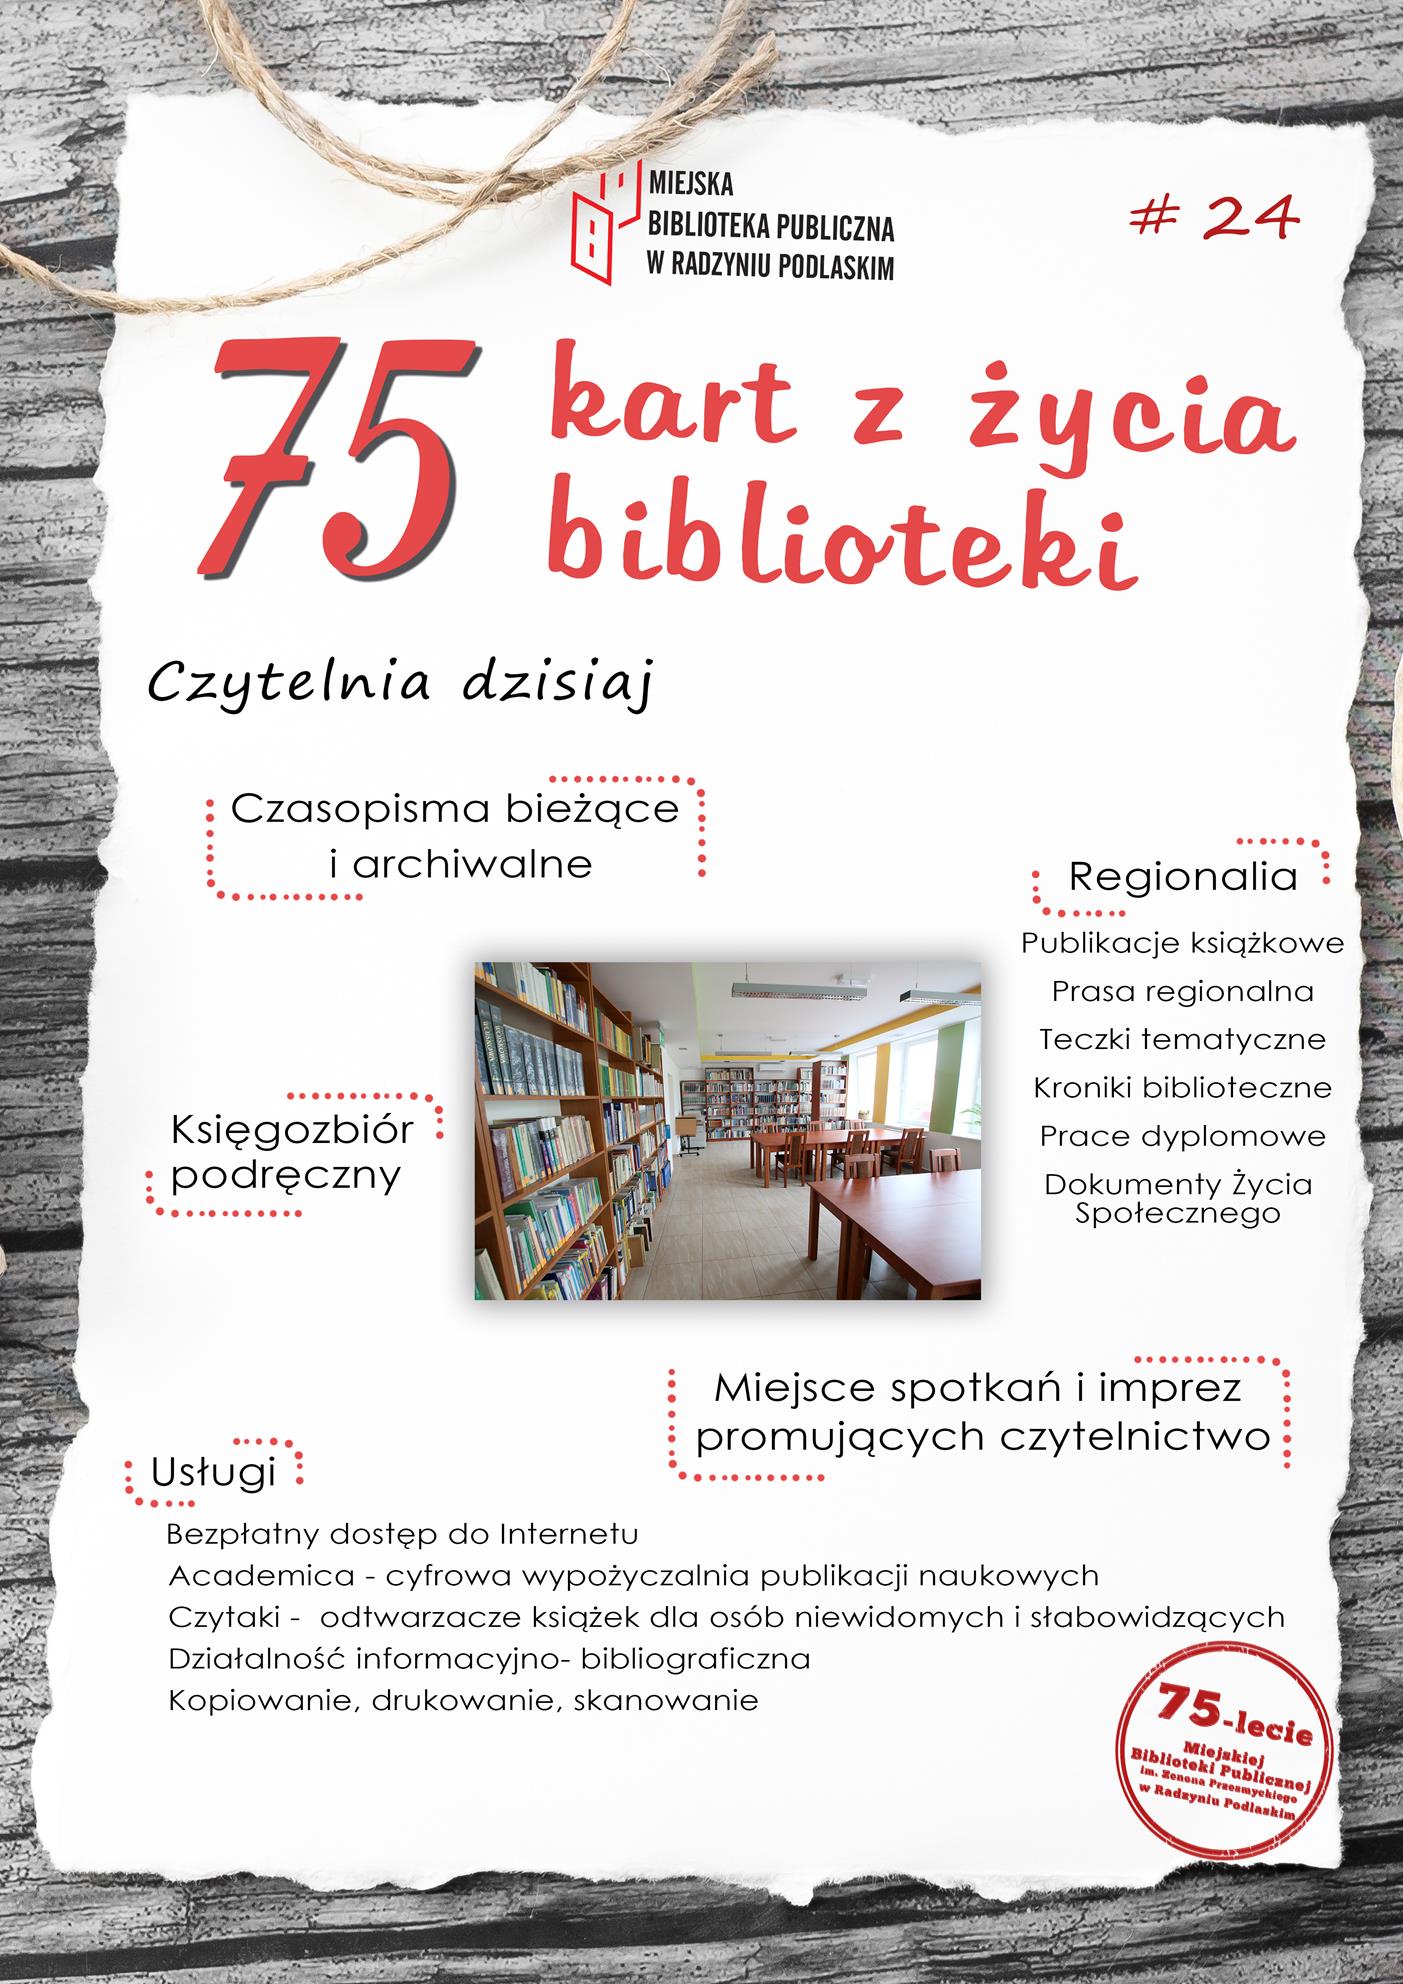 Zasoby czytelni. 75 kart z życia Miejskiej Biblioteki w Radzyniu Podlaskim